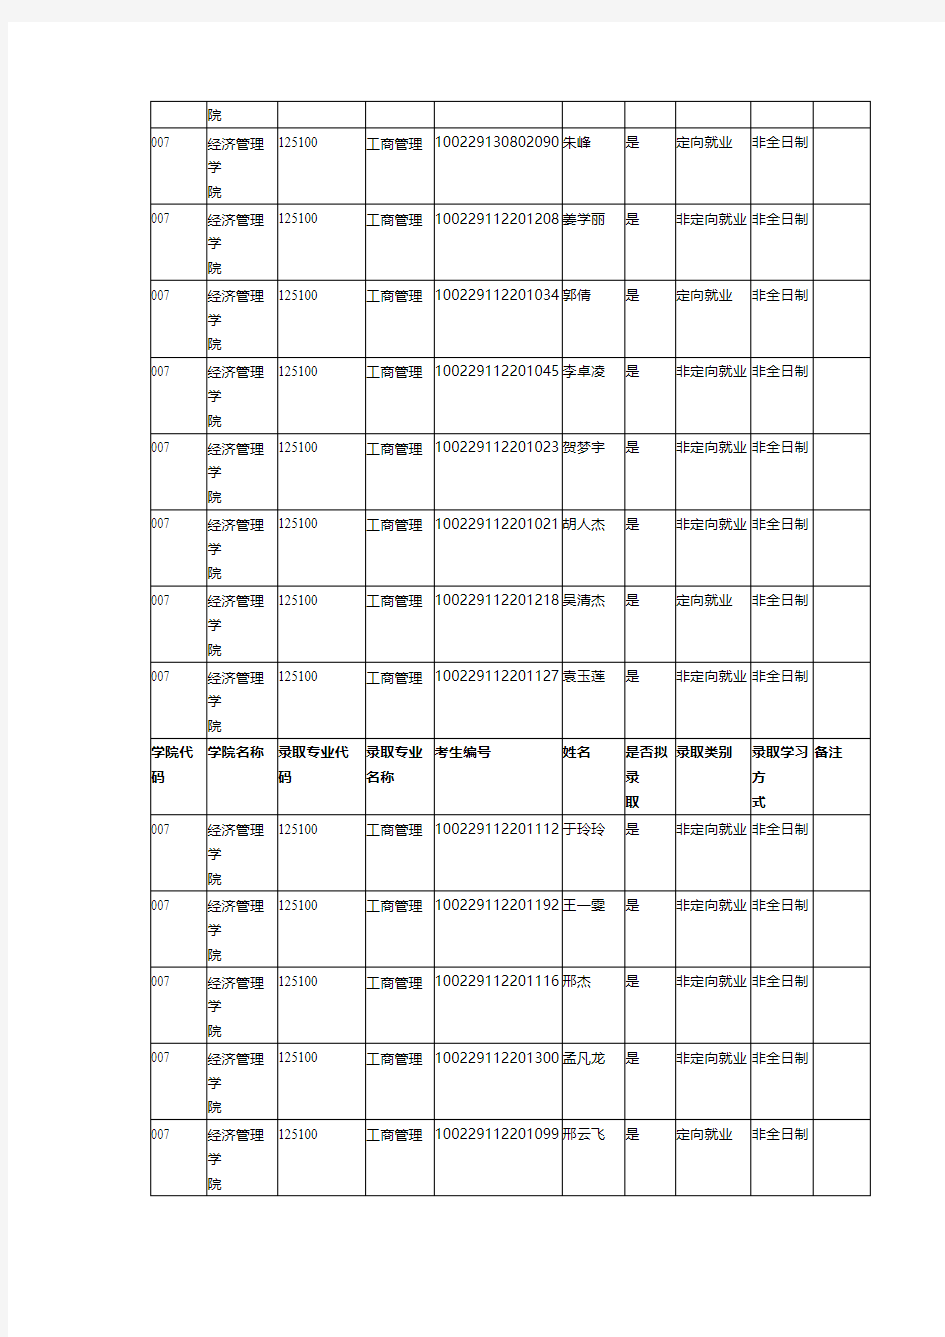 2019北京林业大学经济管理学院硕士研究生拟录取名单